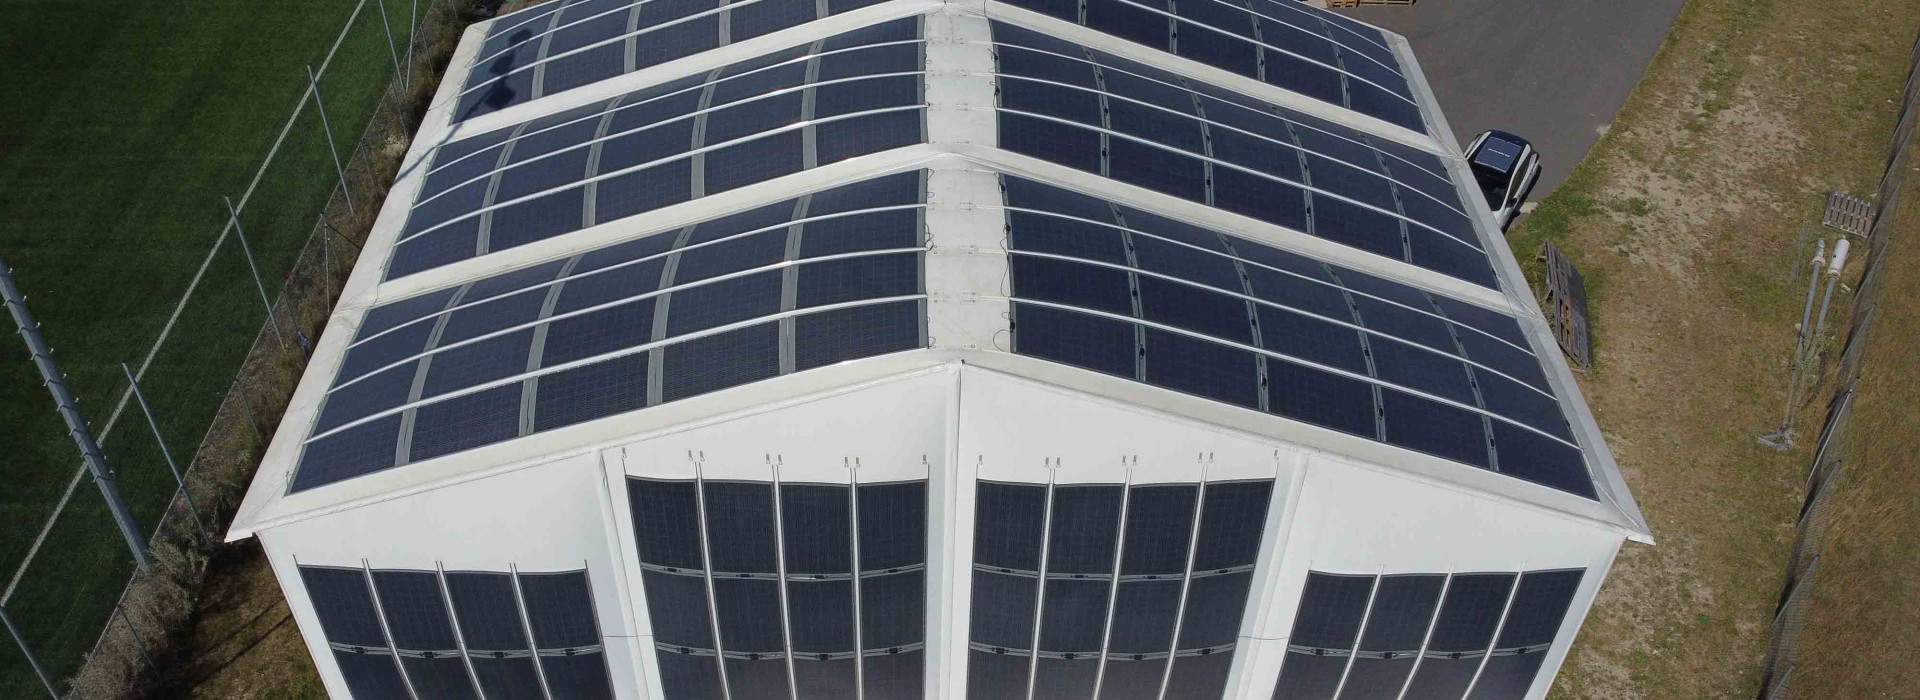 Solar-Lösung für große Zelte